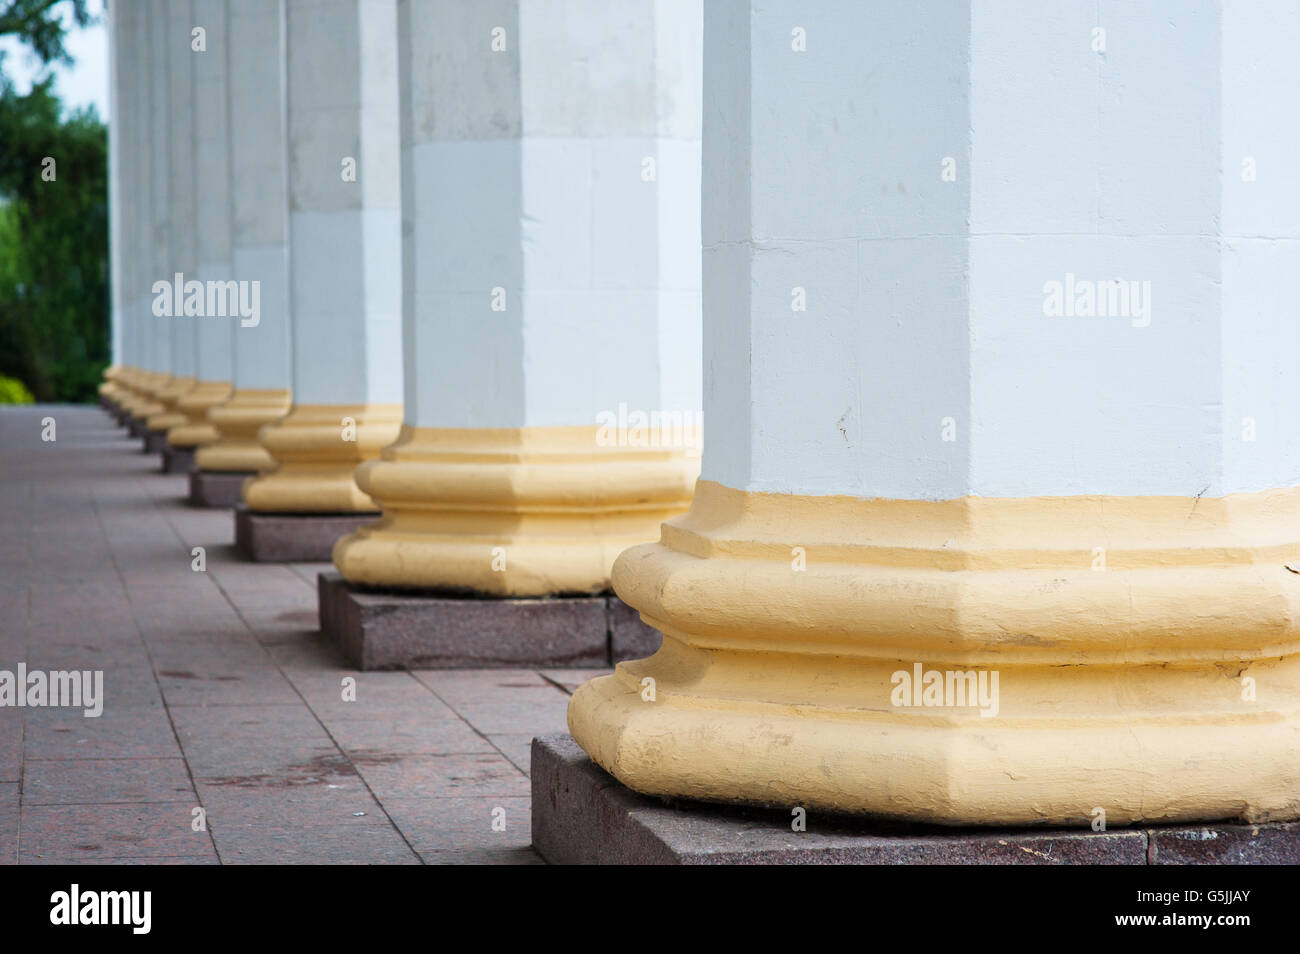 architectural columns on a building facade Stock Photo